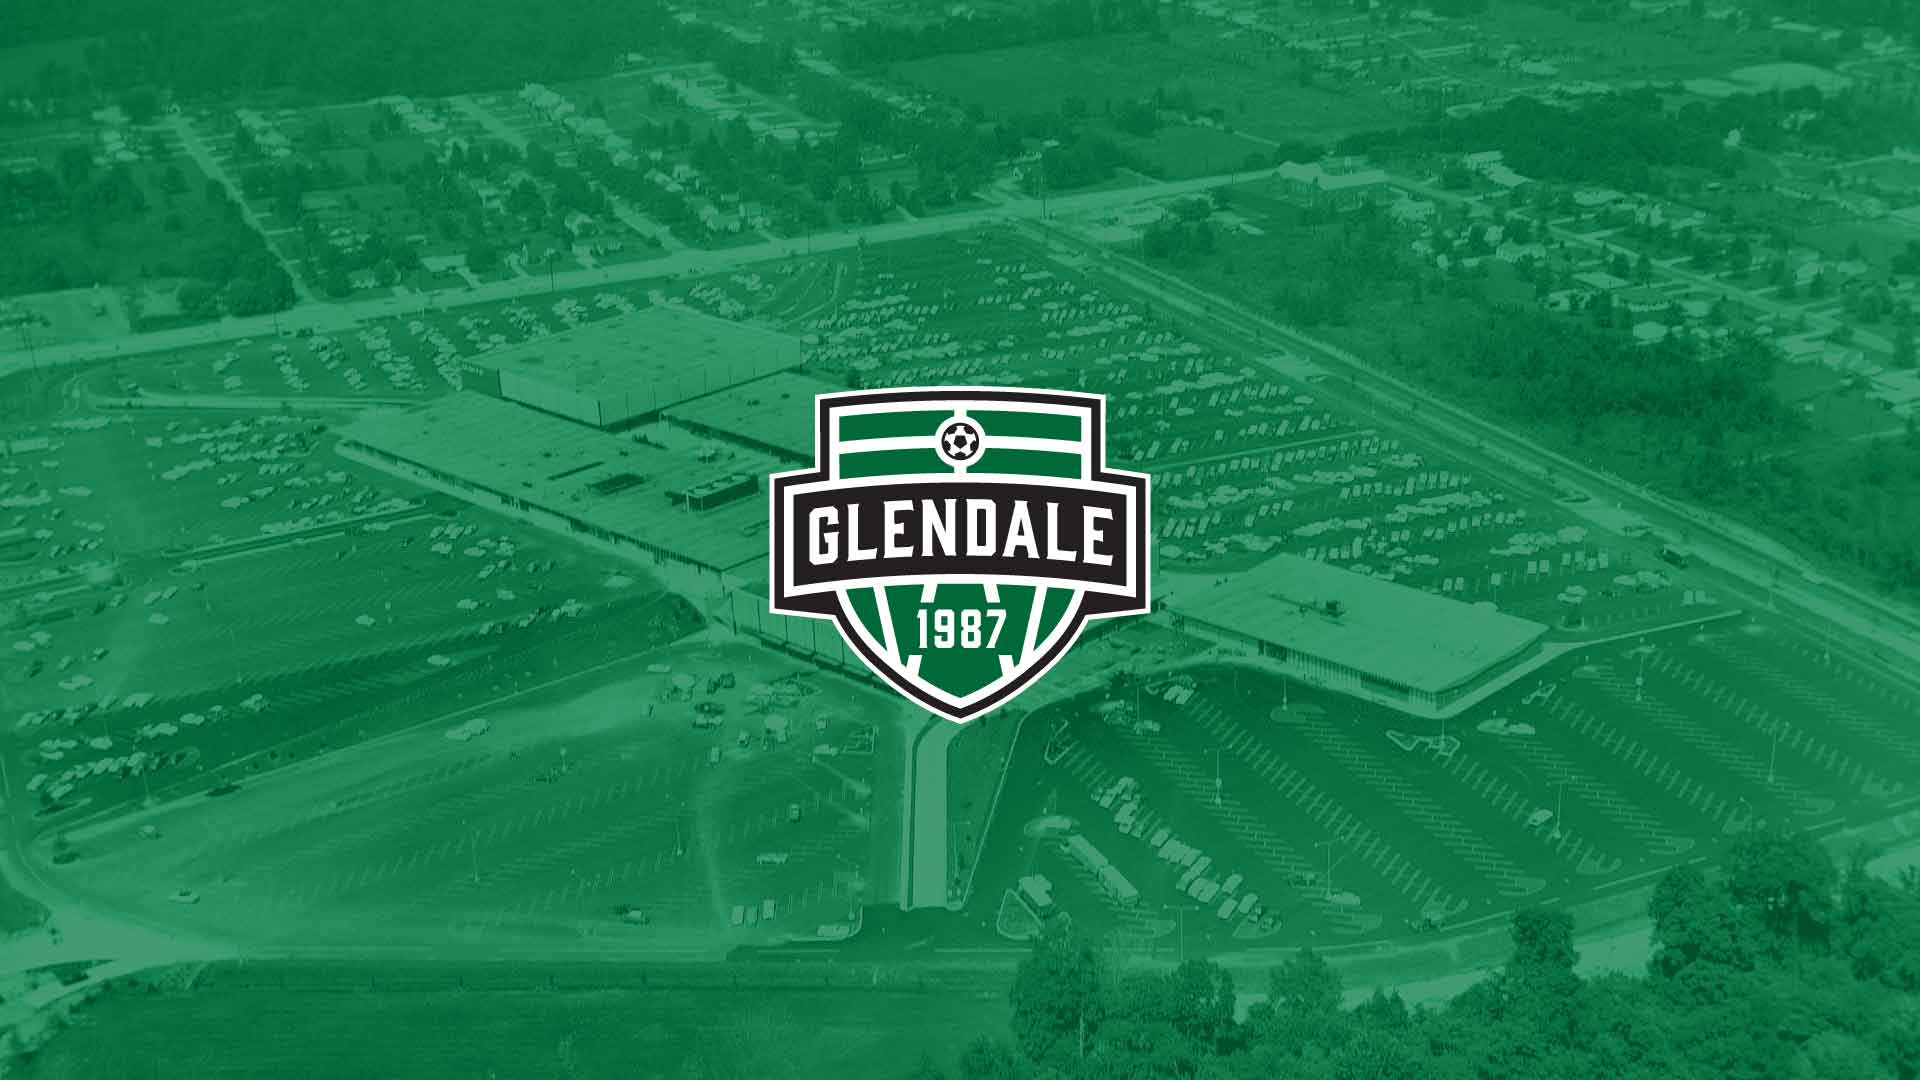 Glendale Soccer Association custom soccer logo design